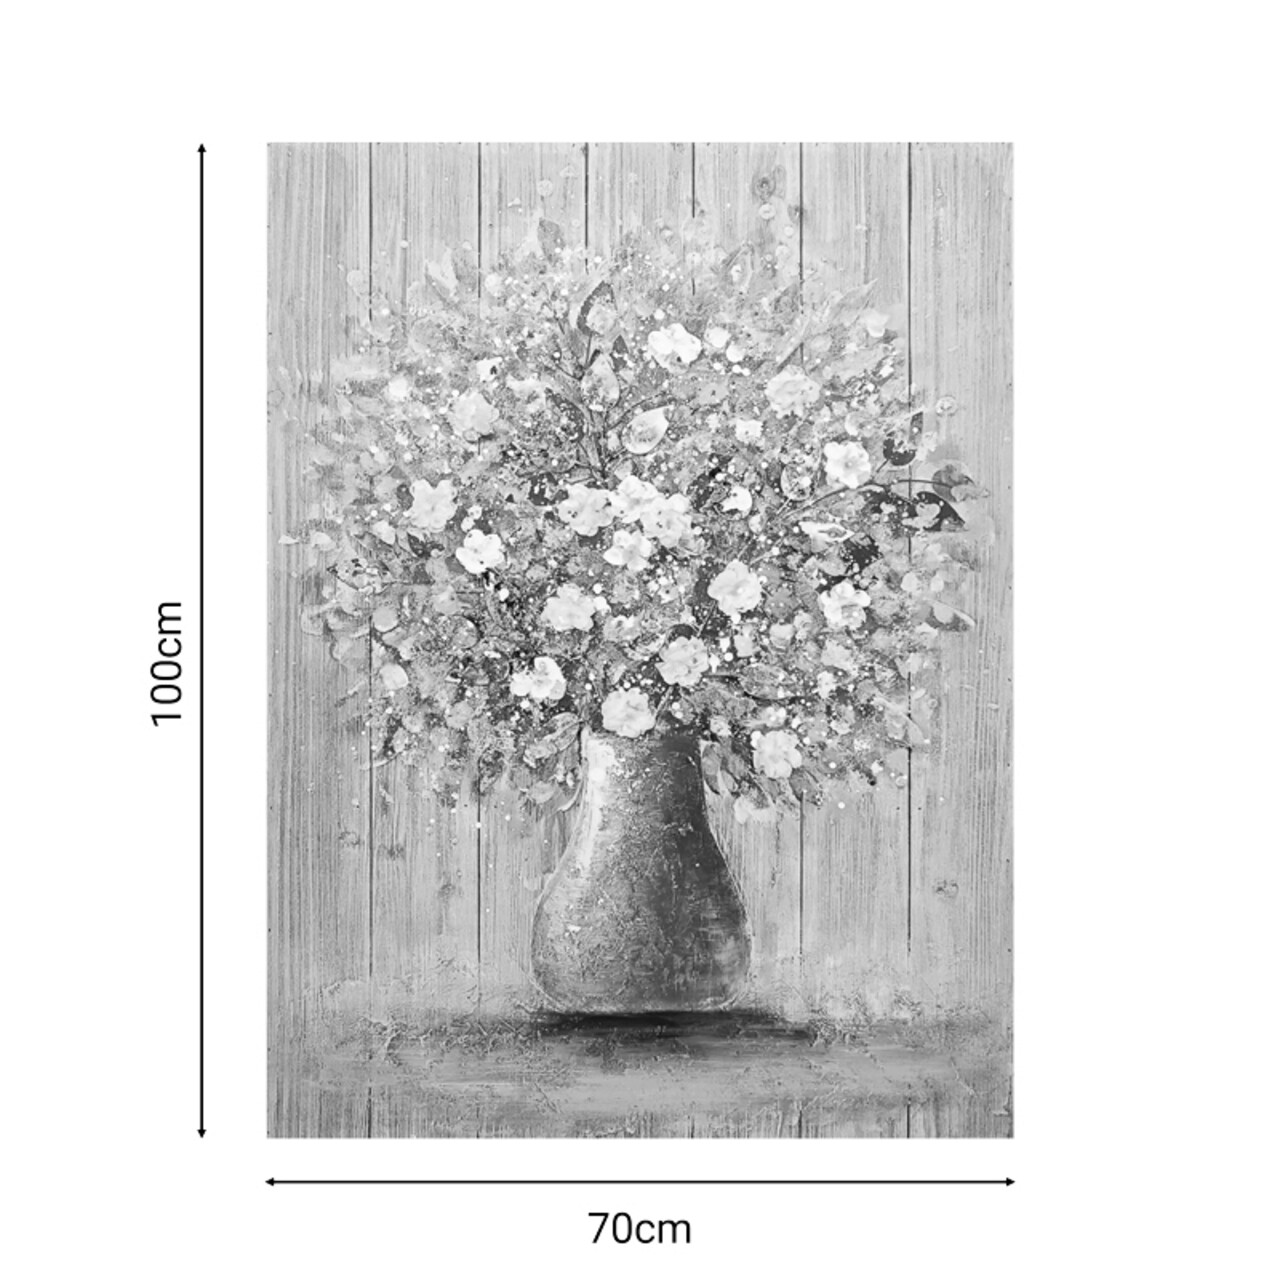 Tablou decorativ Flowerpot v1, Inart, 70x100 cm, canvas/lemn de brad, multicolor